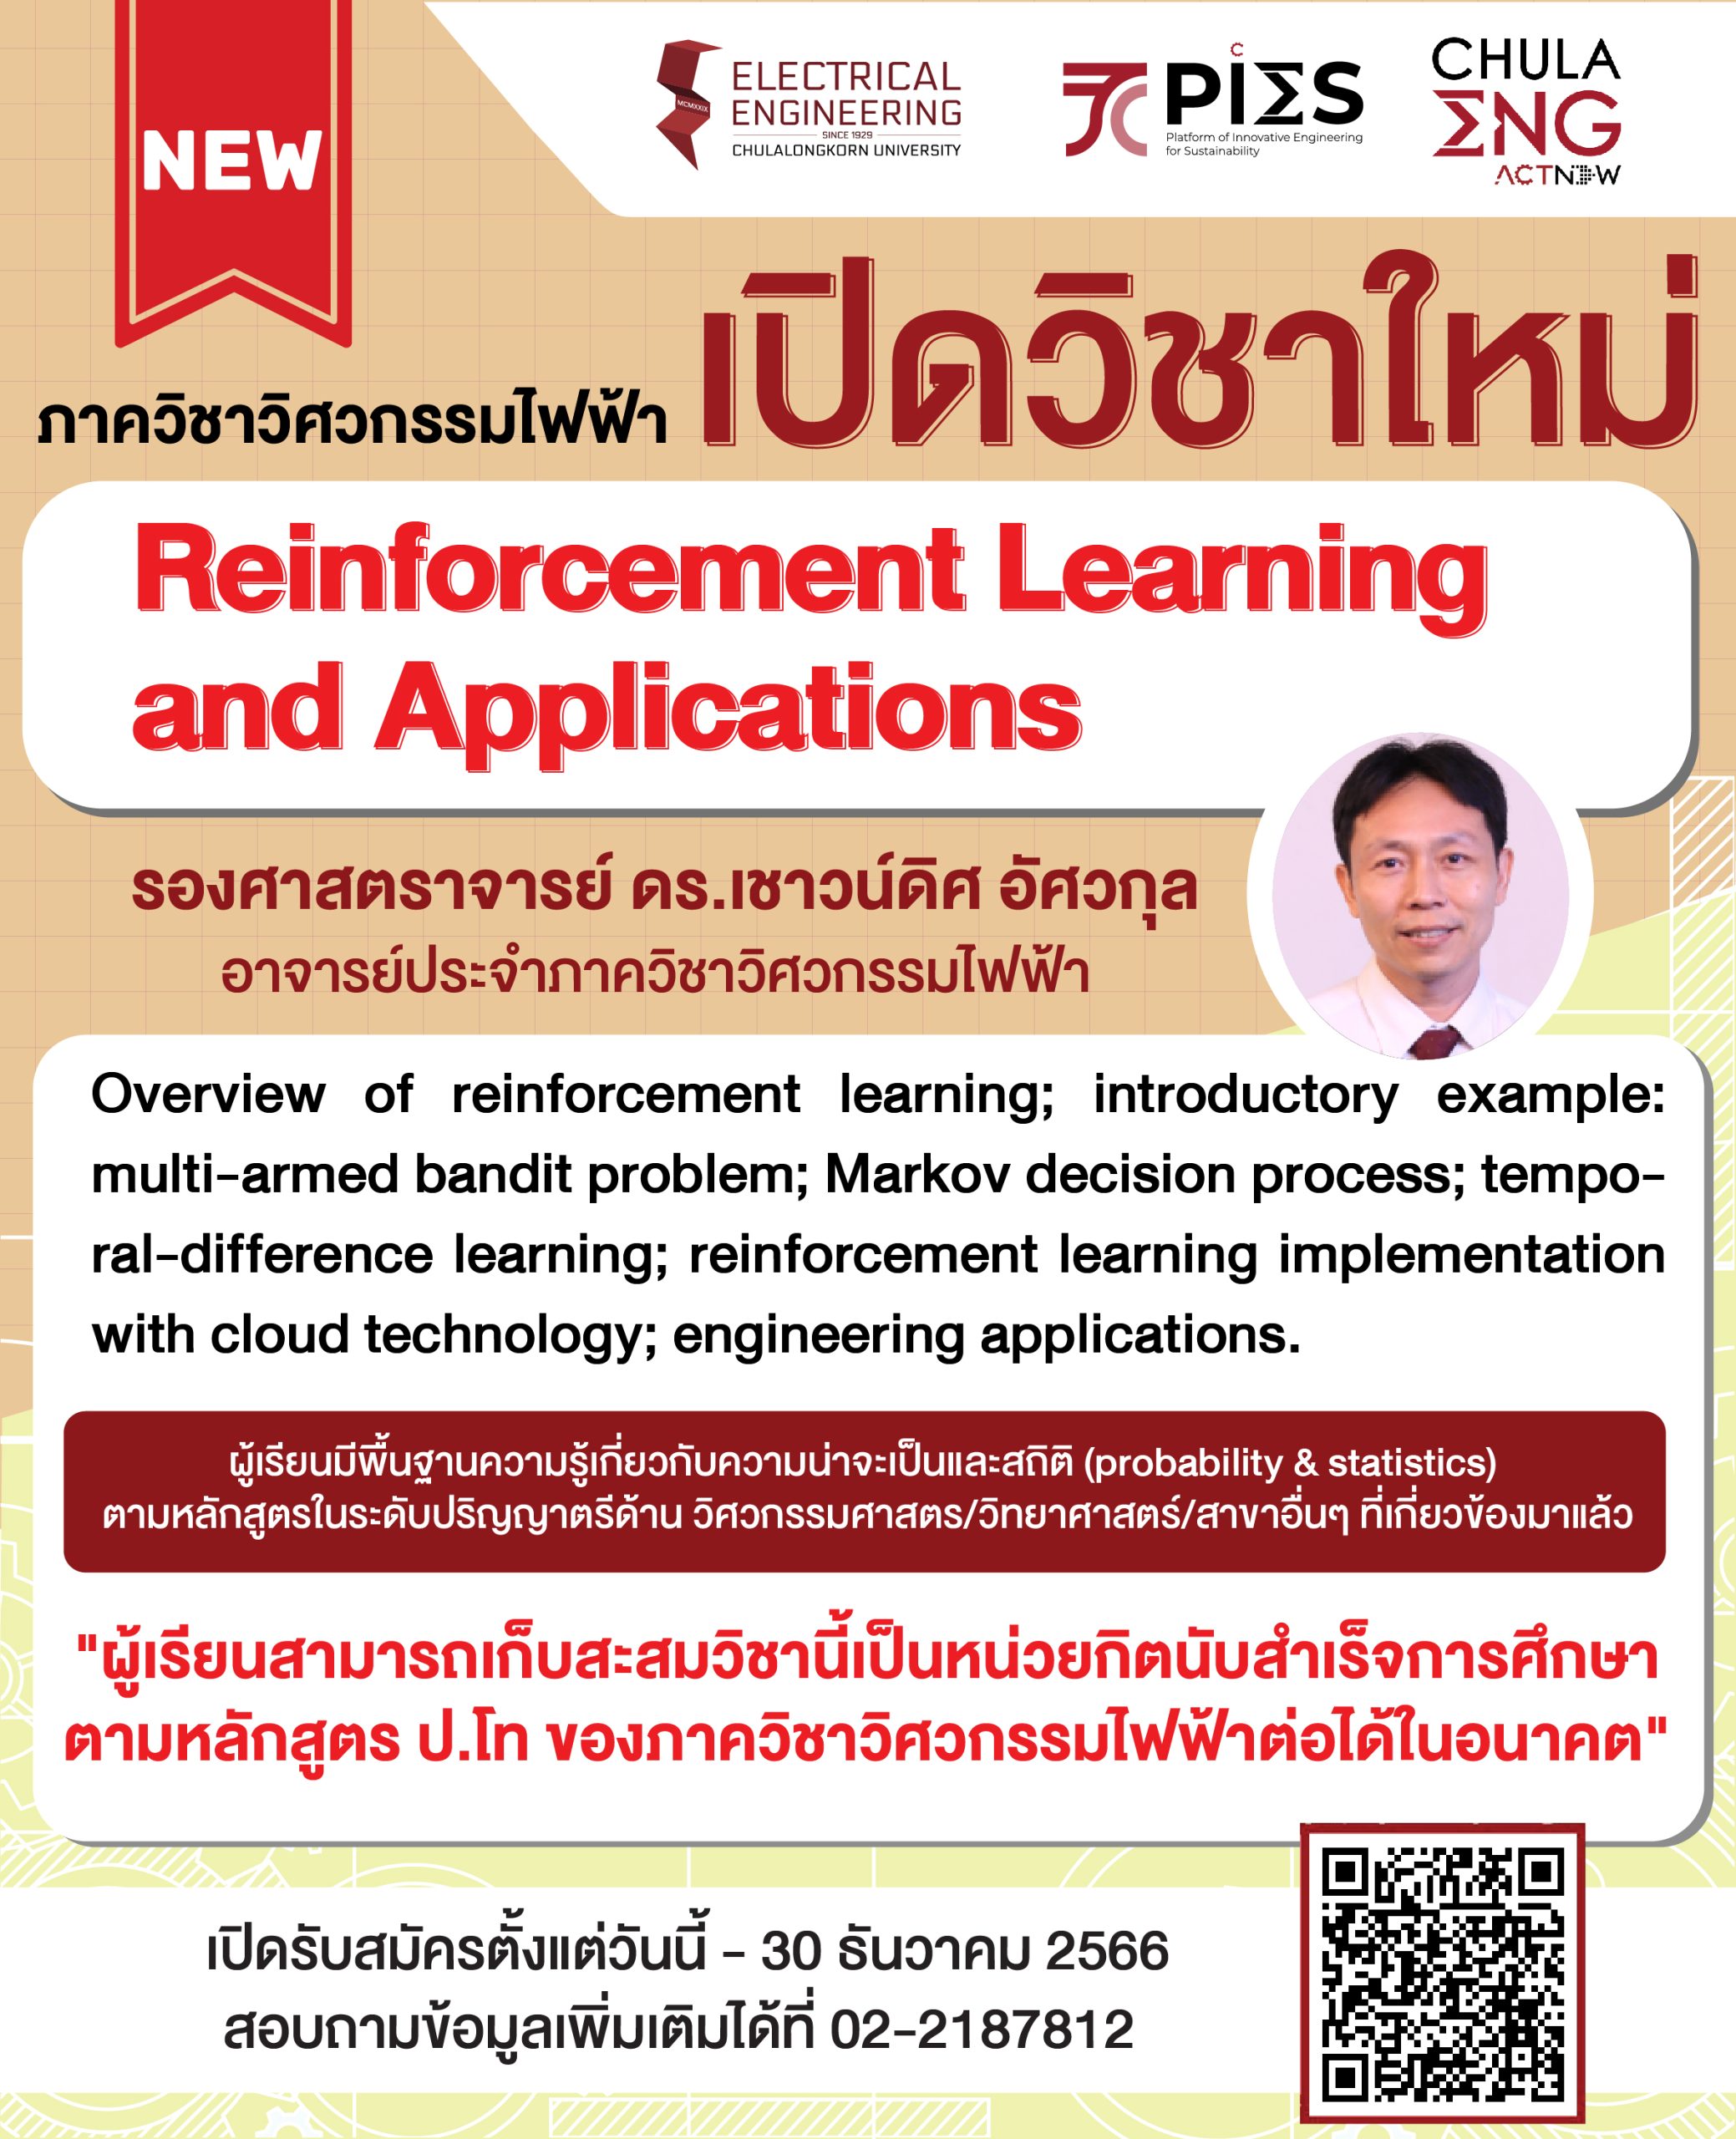 ภาควิชาฯ เปิดวิชาใหม่ Reinforcement Learning and Applications โดยรองศาสตราจารย์ ดร.เชาวน์ดิศ อัศวกุล